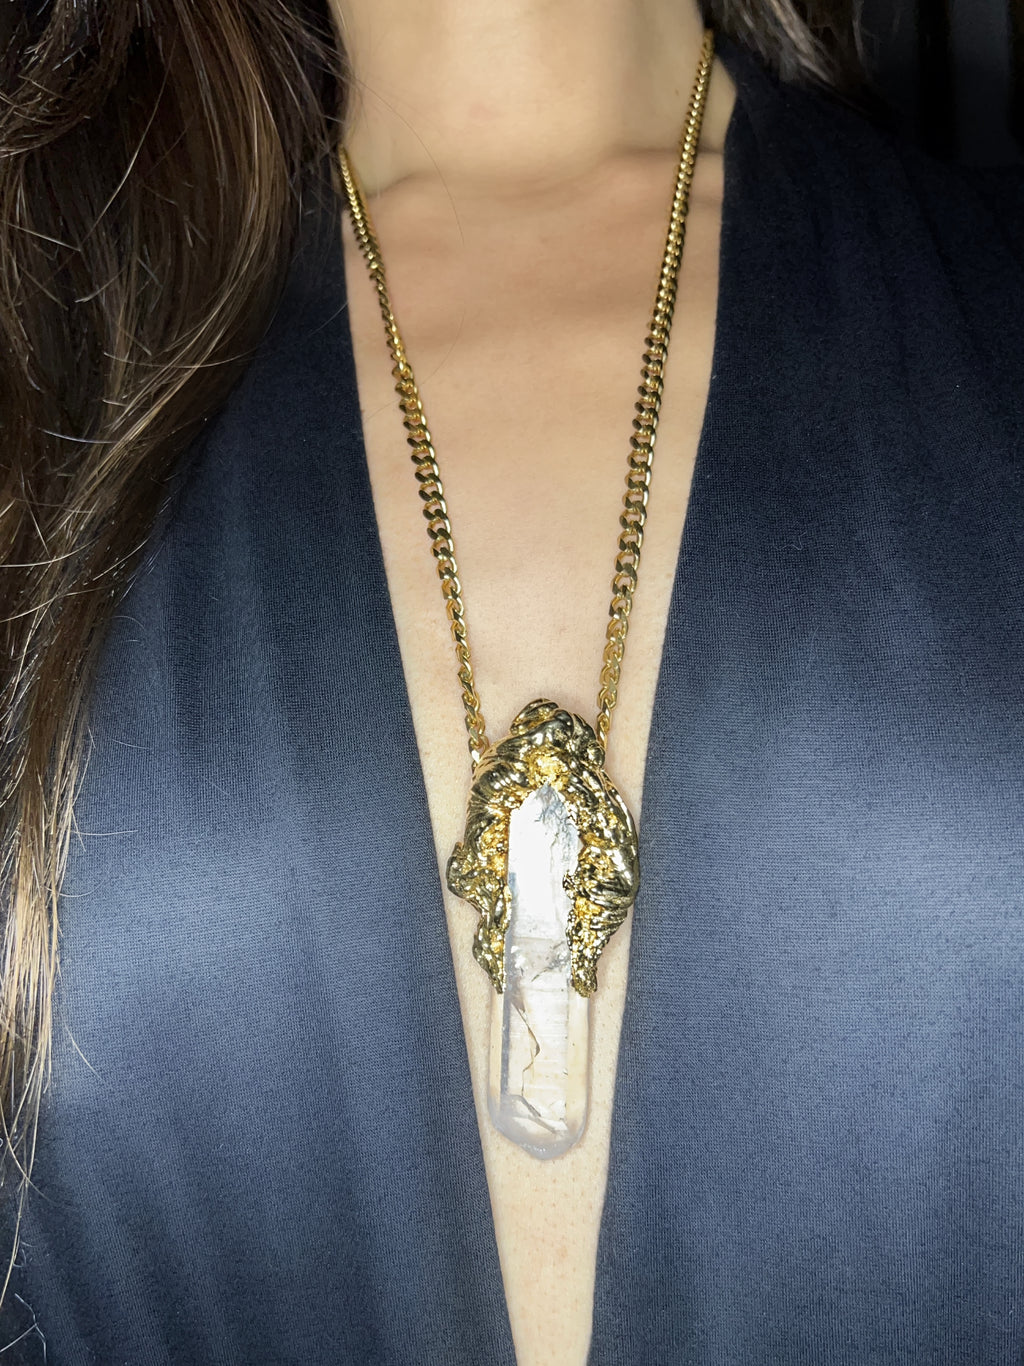 Feather LEMURIAN QUARTZ necklace